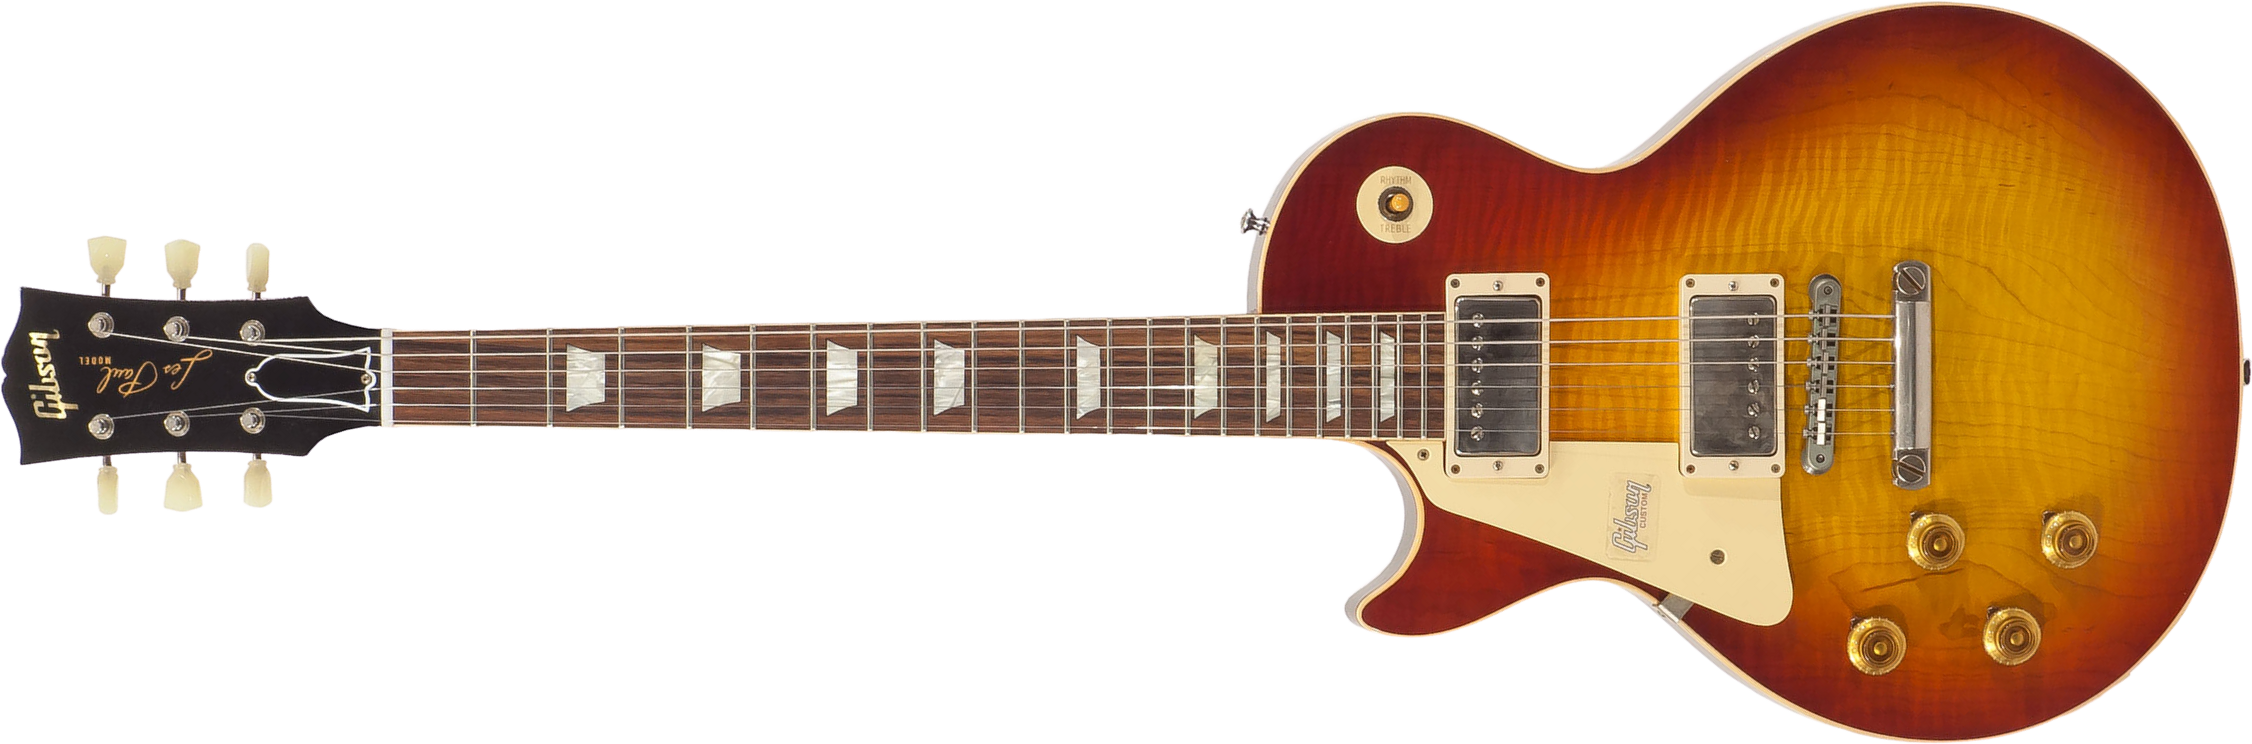 Gibson Custom Shop M2m Les Paul Standard 1959 Lh Gaucher Ltd 2h Ht Rw #971610 - Vos Washed Cherry - Guitare Électrique Gaucher - Main picture